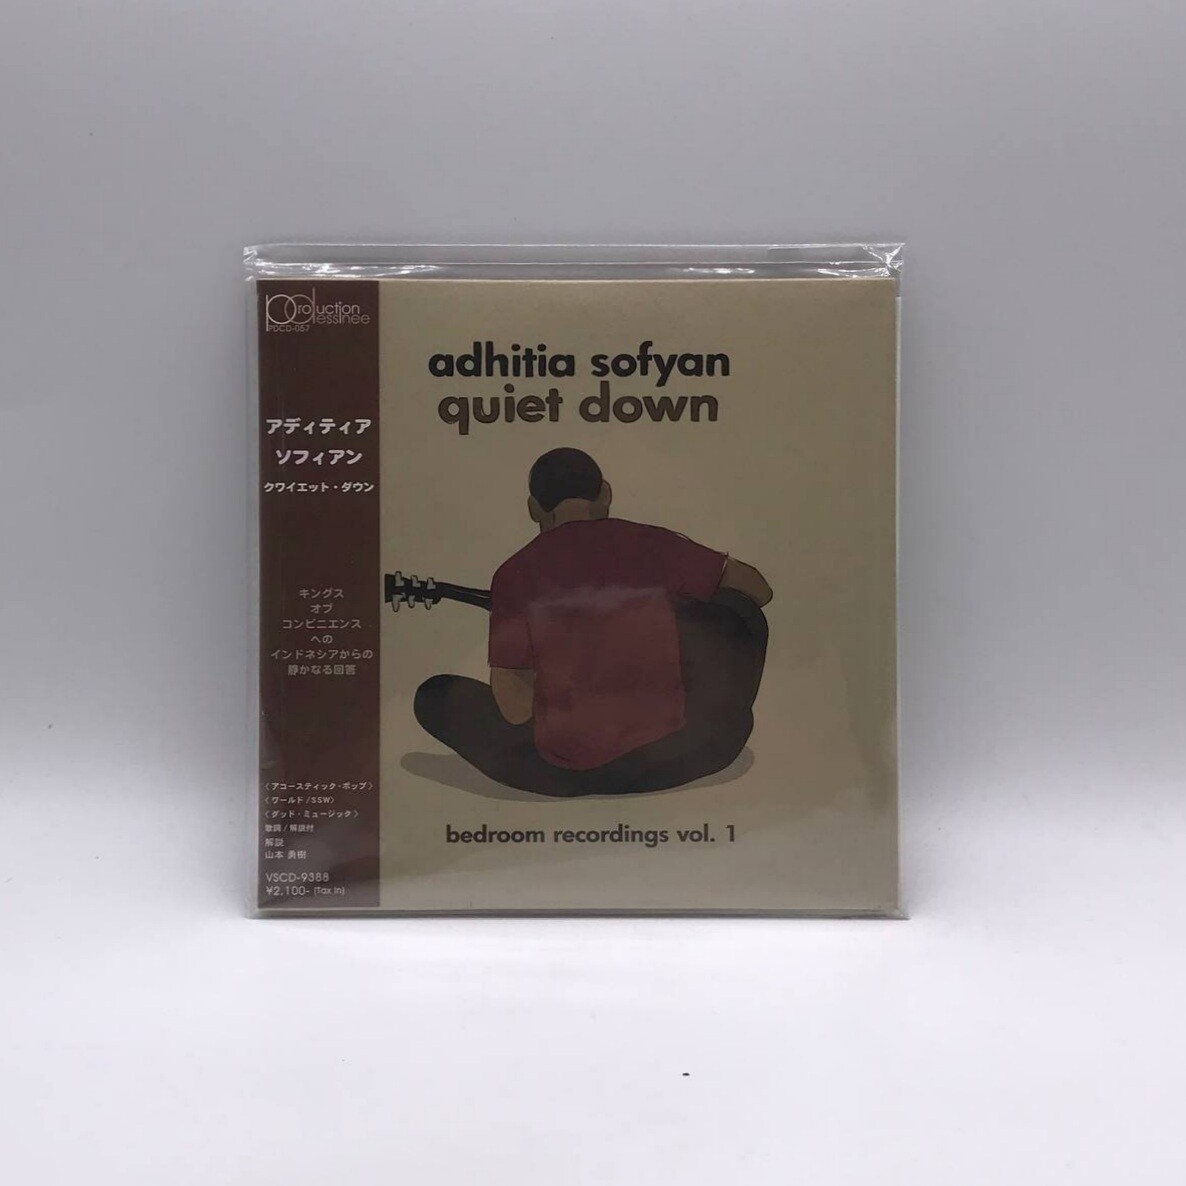 [USED] ADHITIA SOFYAN -QUIET DOWN- CD (JAPAN PRESS)